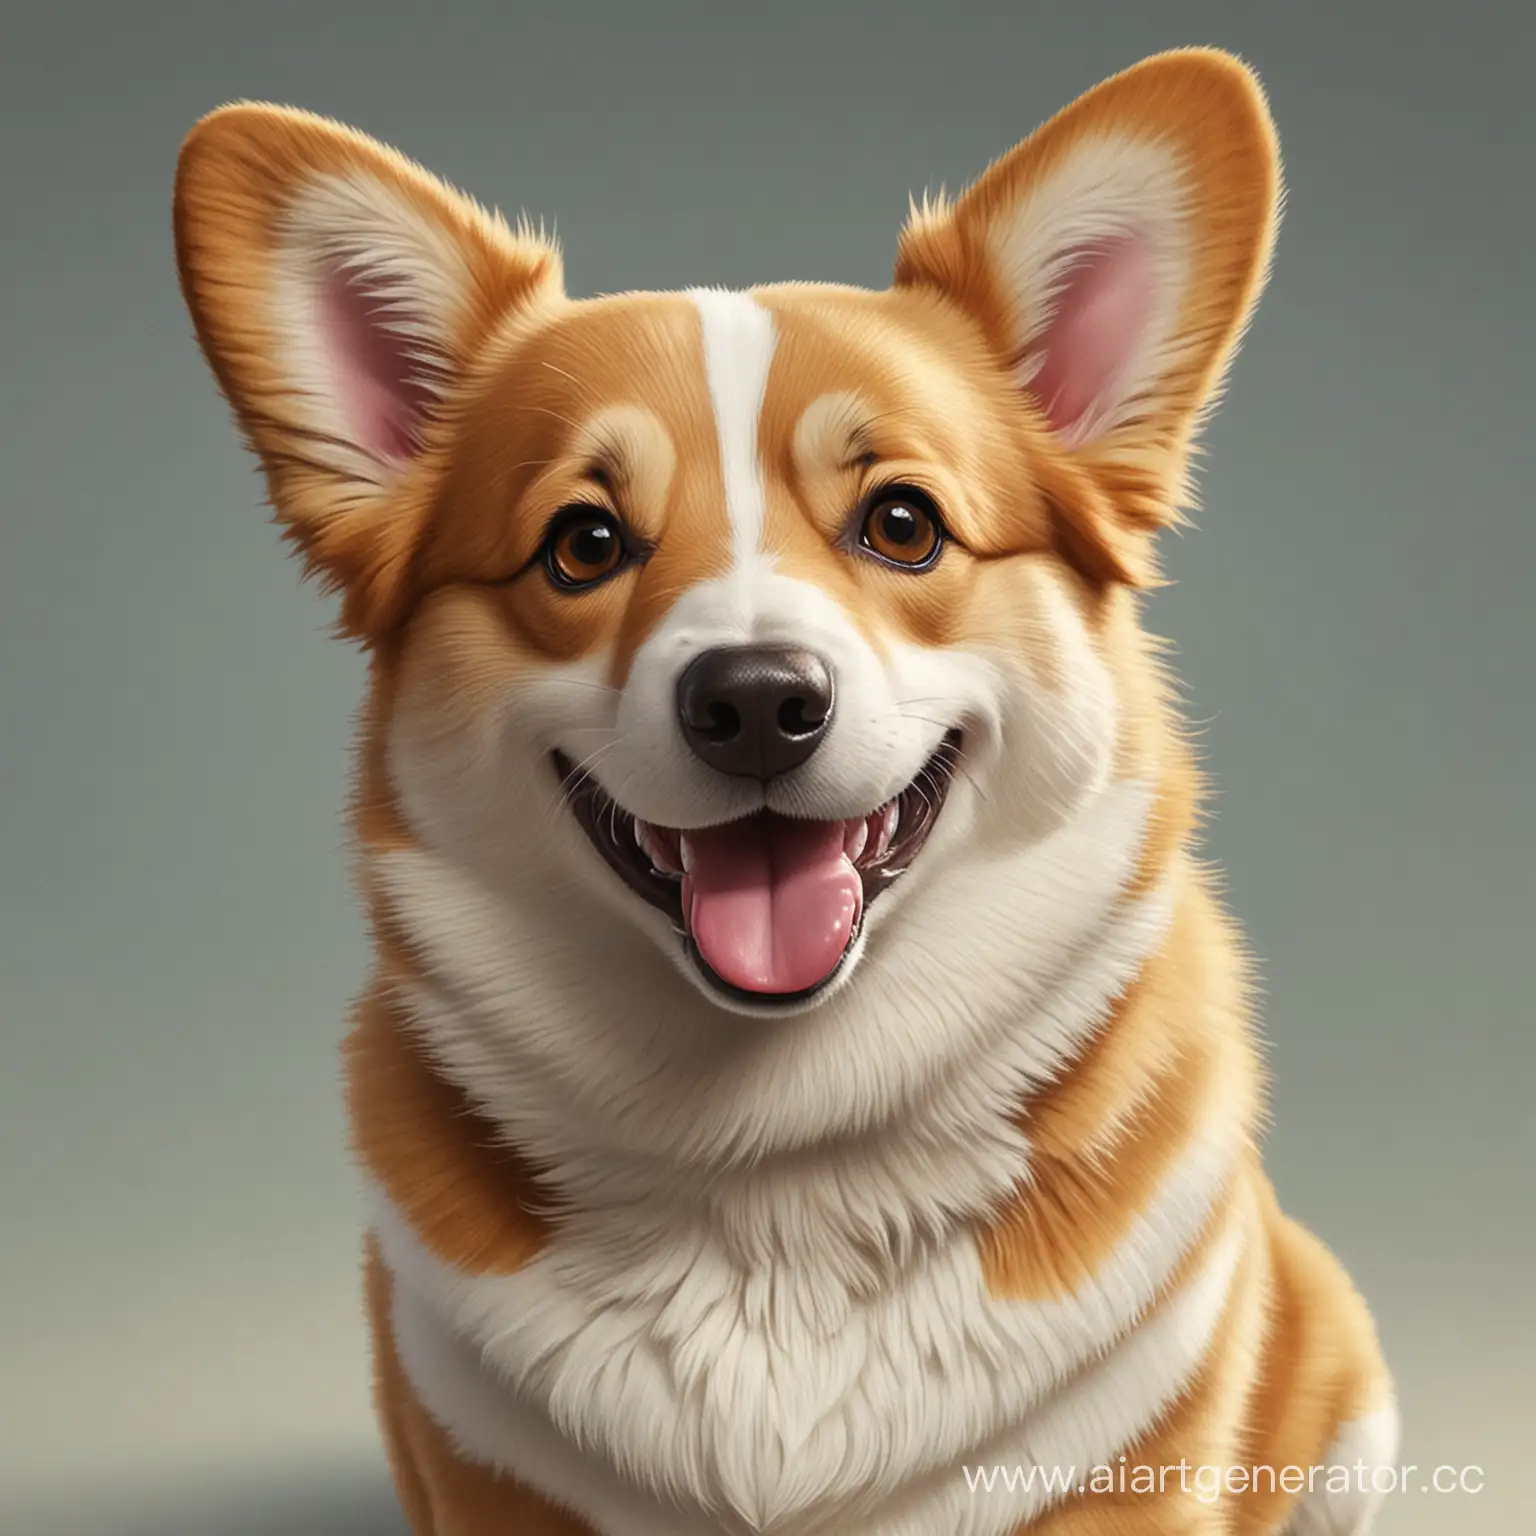 Smiling-Realism-Joyful-Corgi-Dog-Portrait